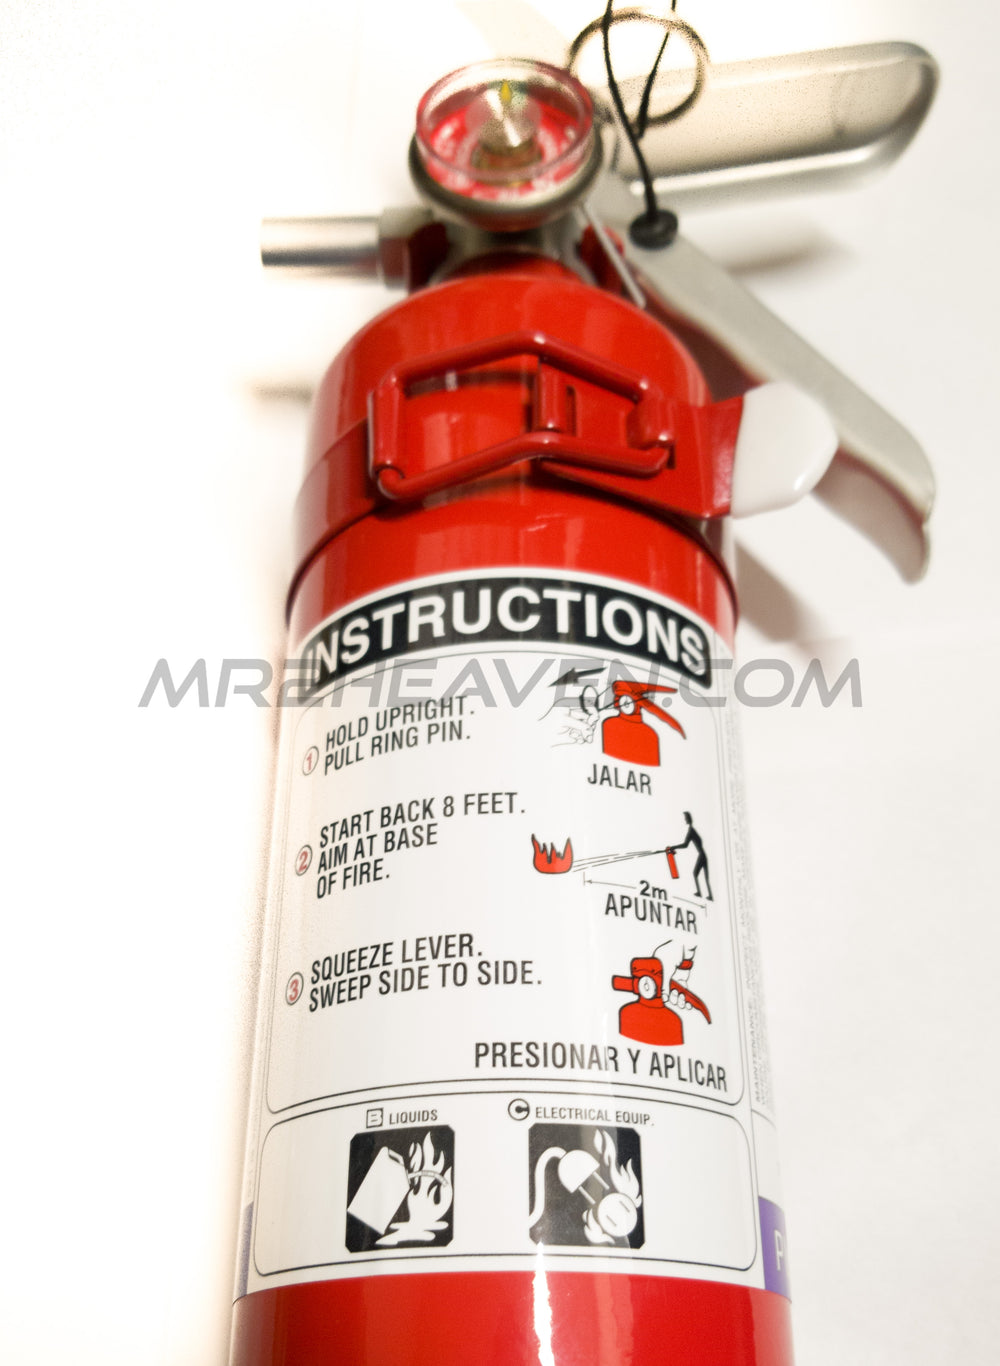 Automotive Commercial Grade Purple K Fire Extinguisher - MR2 Heaven